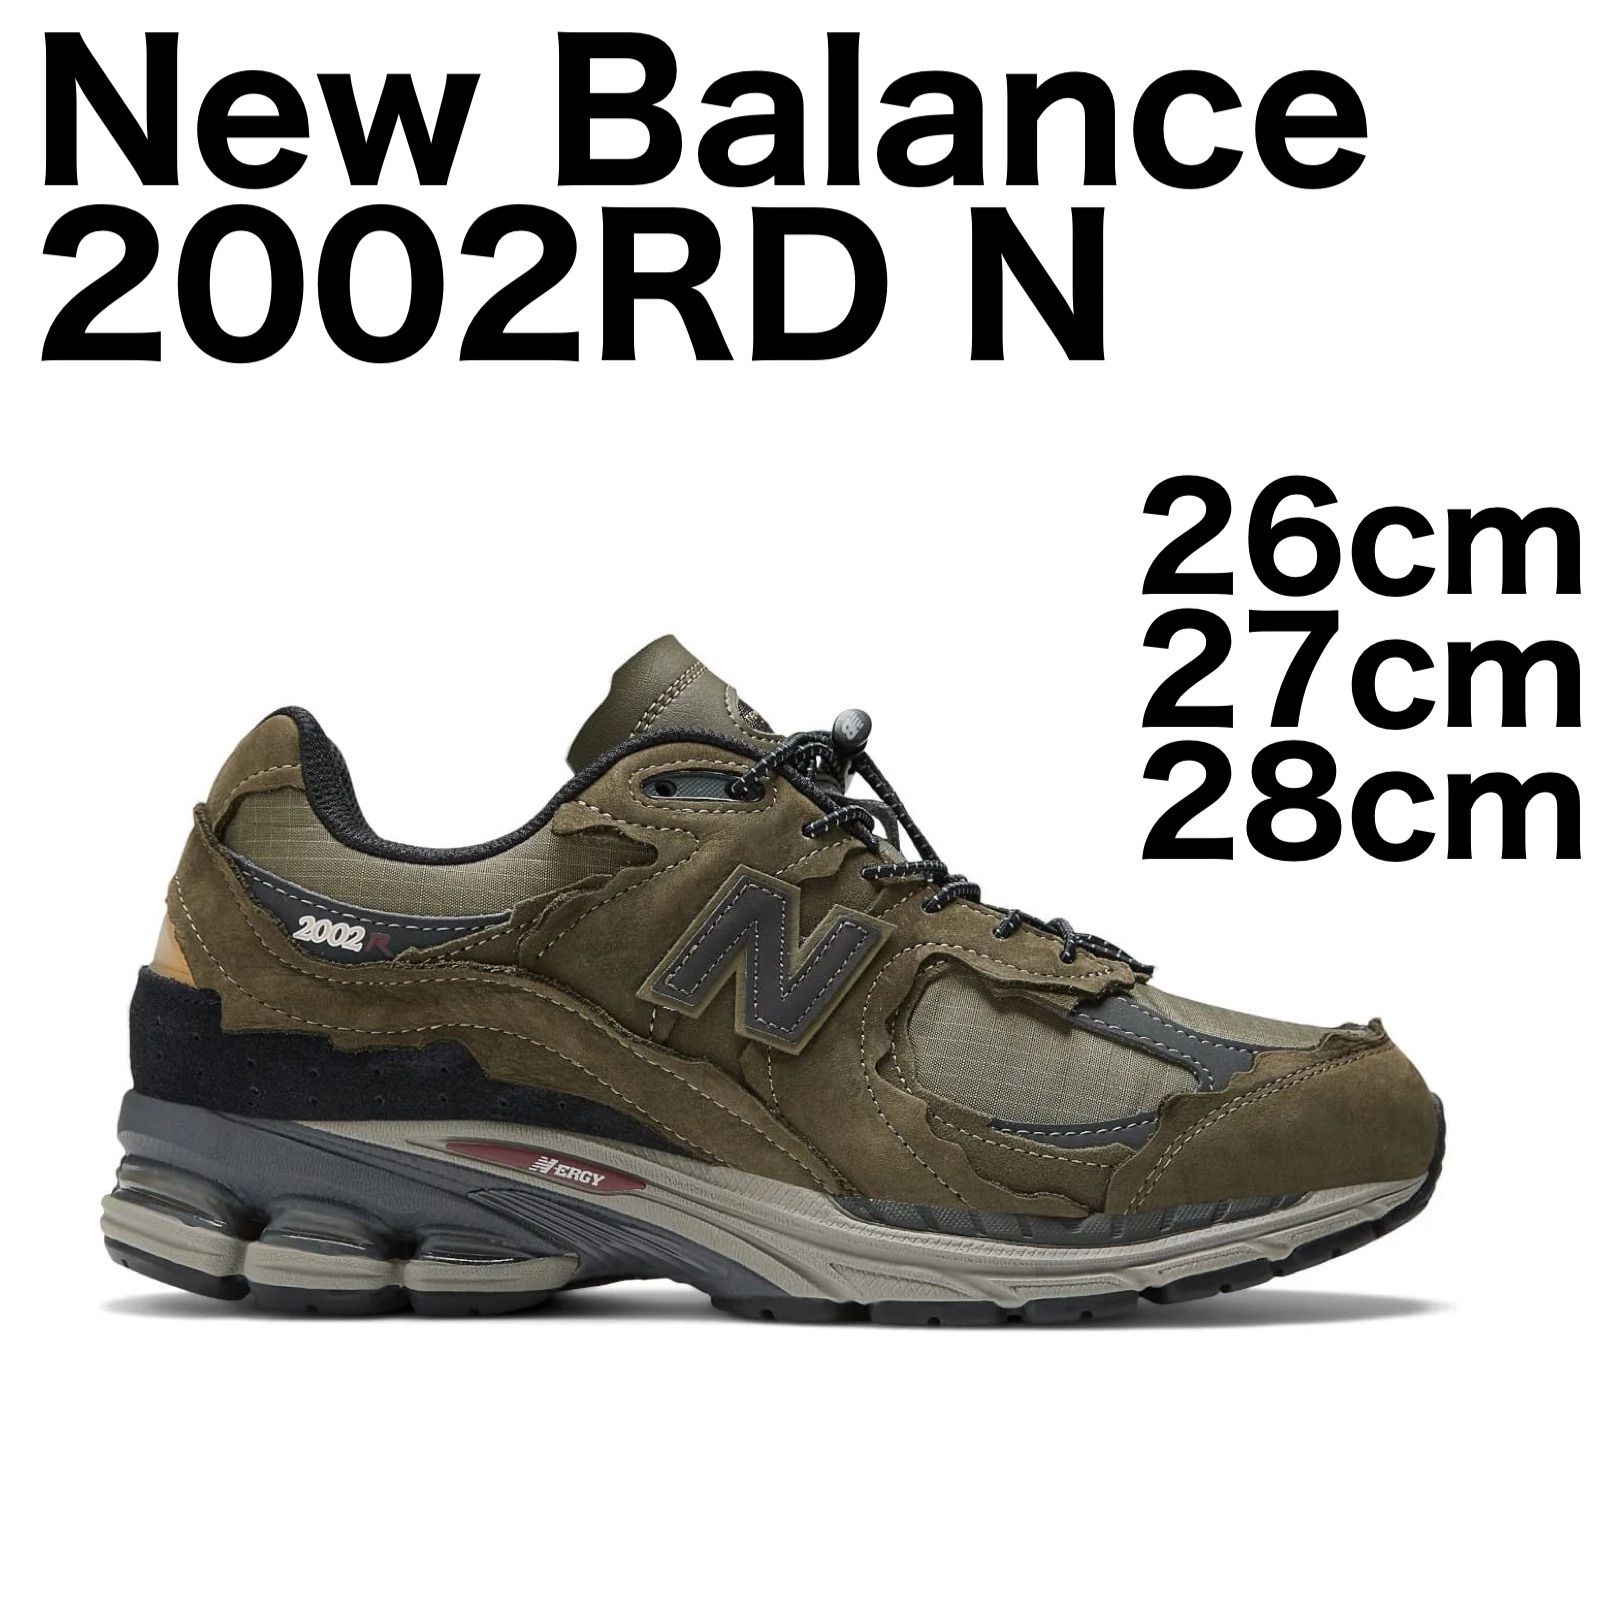 新品 / タグ,箱付 / 正規品保証】New Balance M2002RDN 26cm 27cm 28cm ...